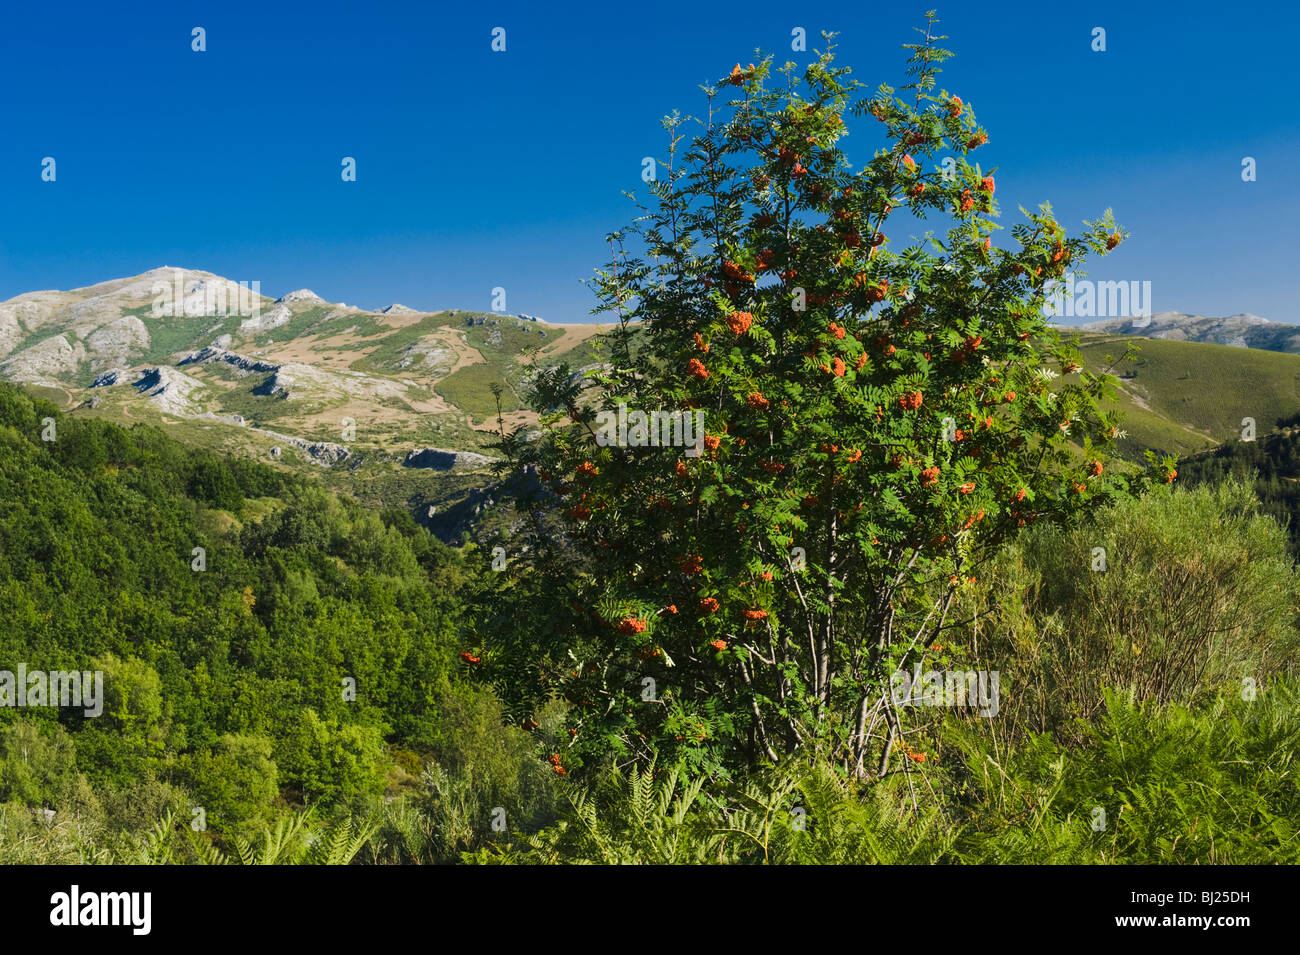 Rowan Tree avec des baies, près de Curavacas, une haute montagne calcaire dans les Monts Cantabriques du nord de l'Espagne Banque D'Images